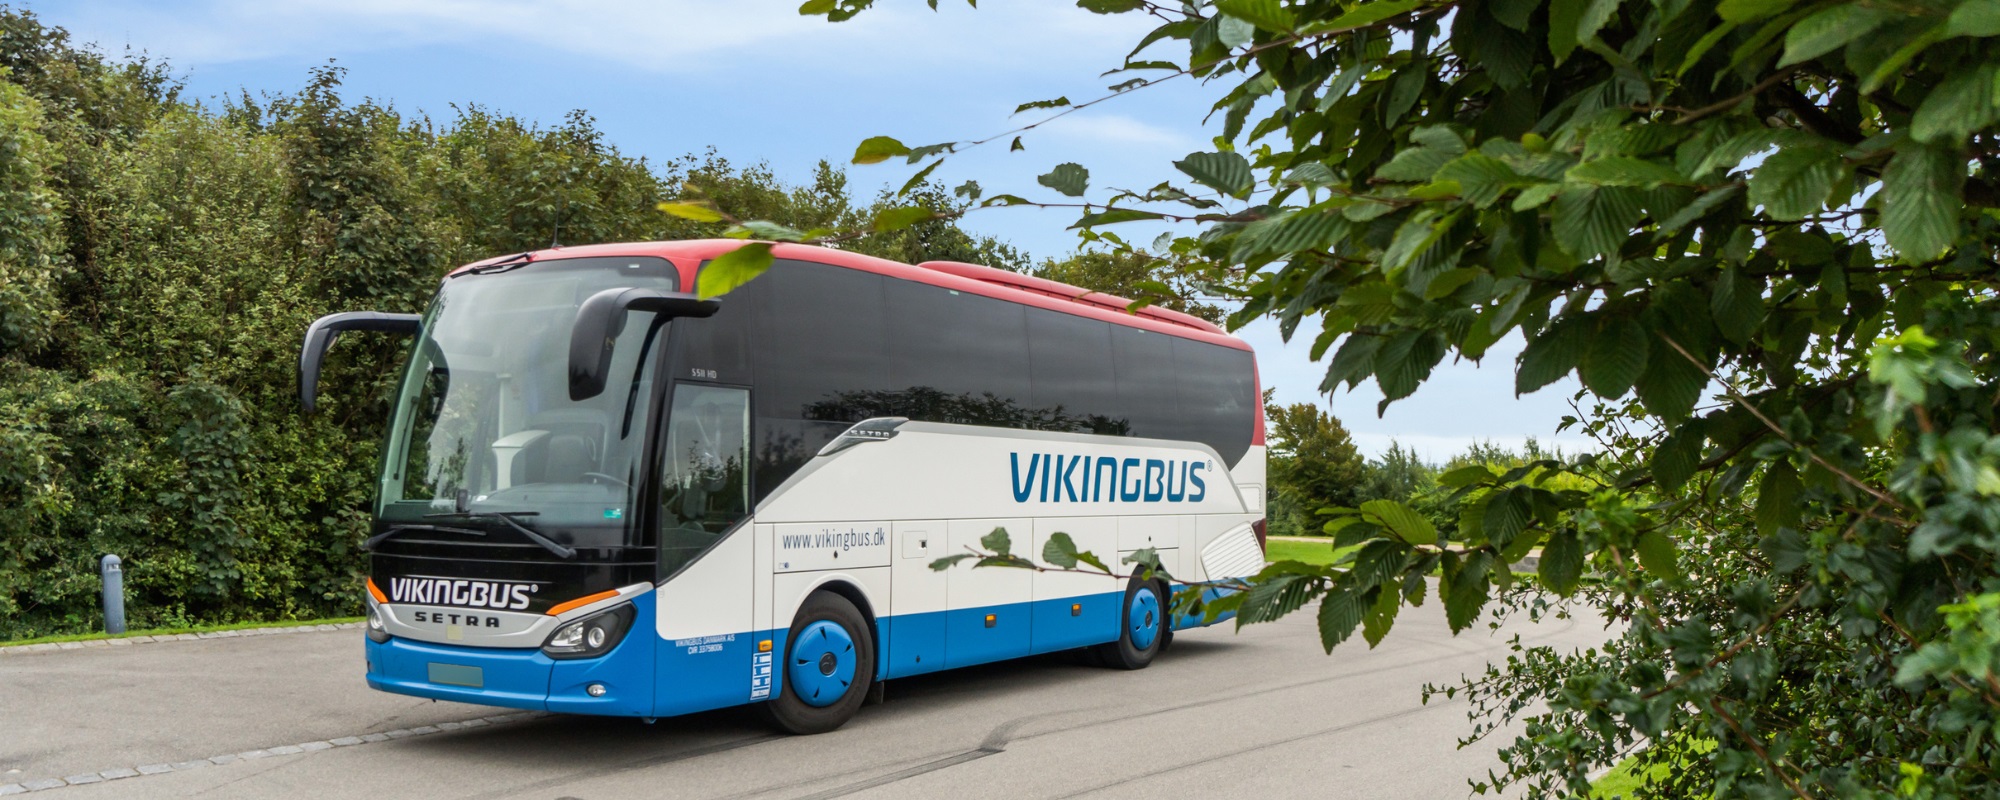 Bustransport til skfierie i Sverige